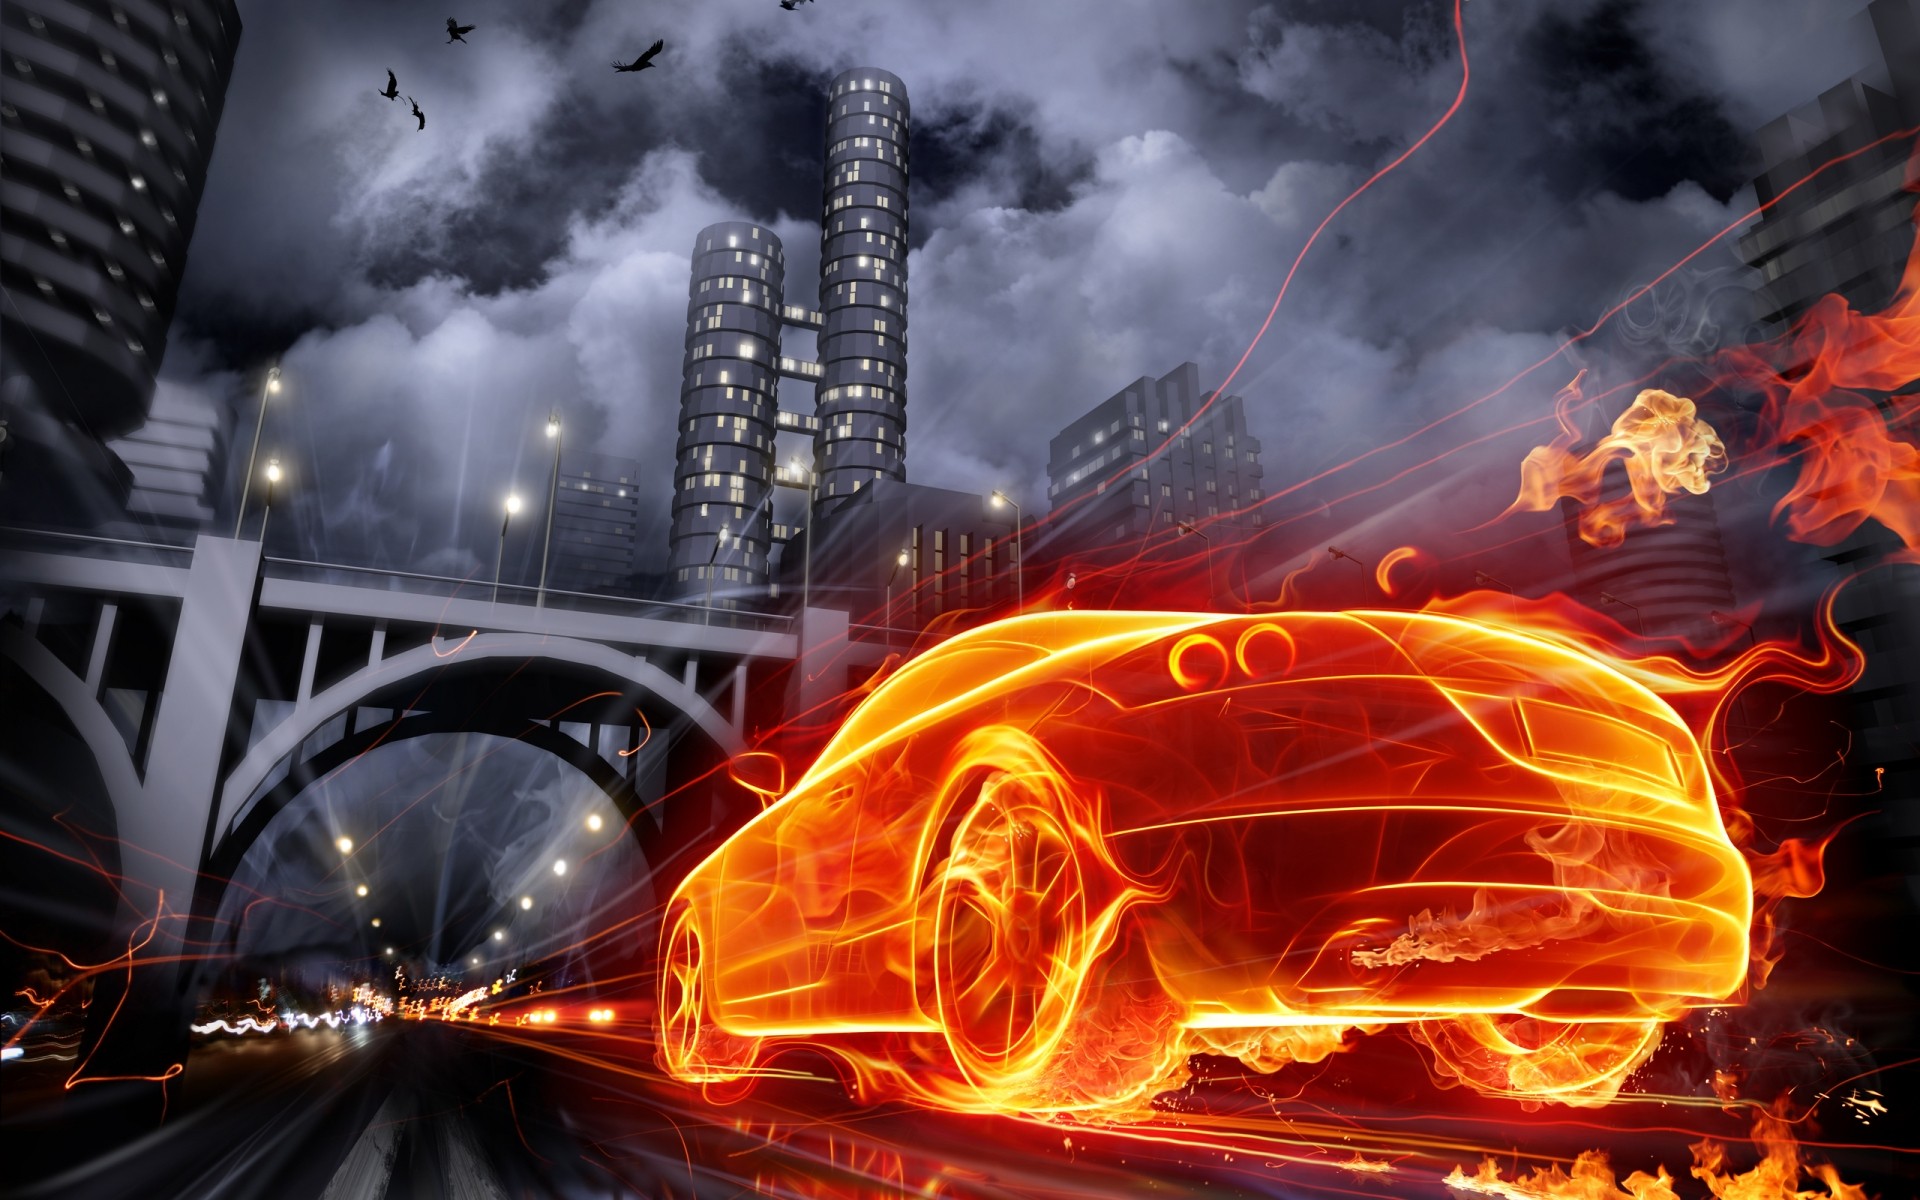 фотообработка пламя дым тепло топлива горячая опасность люминесценция движения город автомобиль towmn мост фото